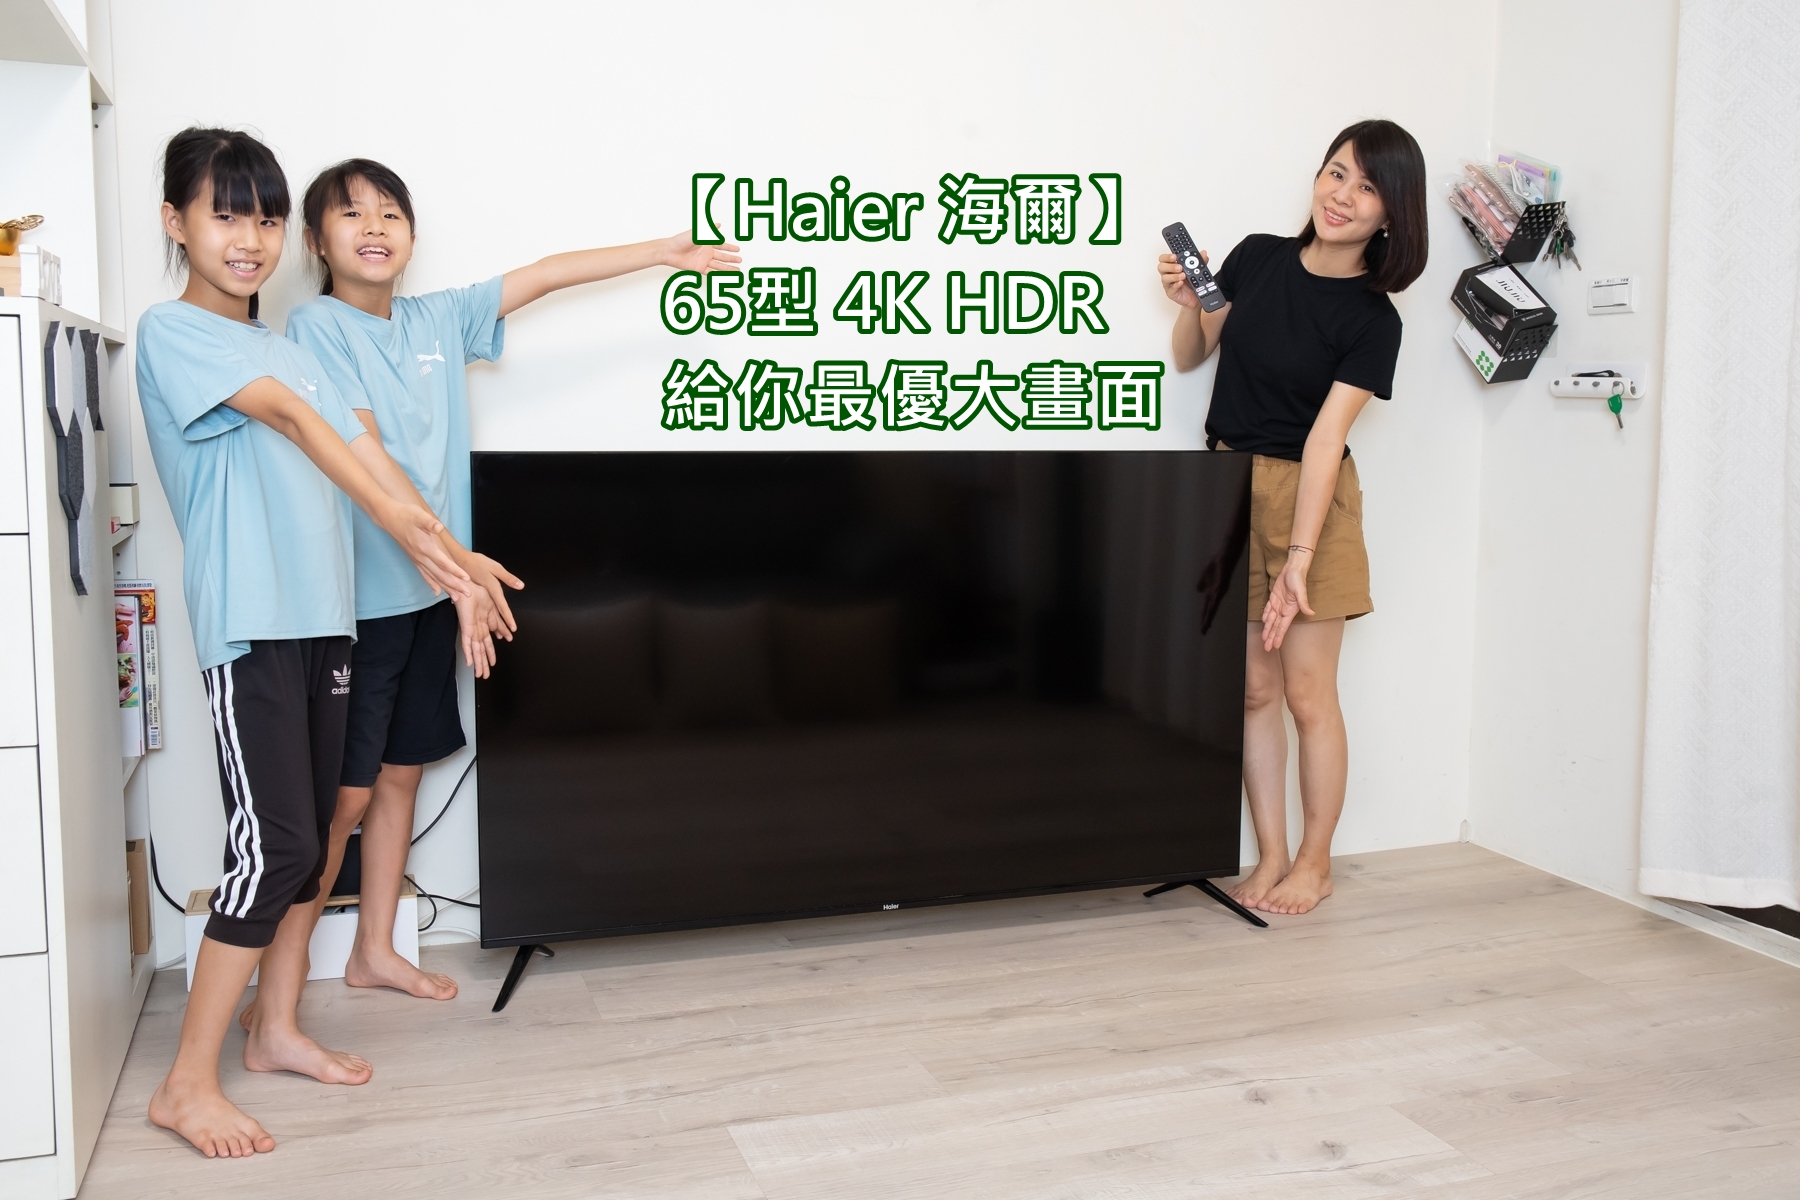 【Haier 海爾】65型 4K HDR電視太震撼 這才是我要的大平台~